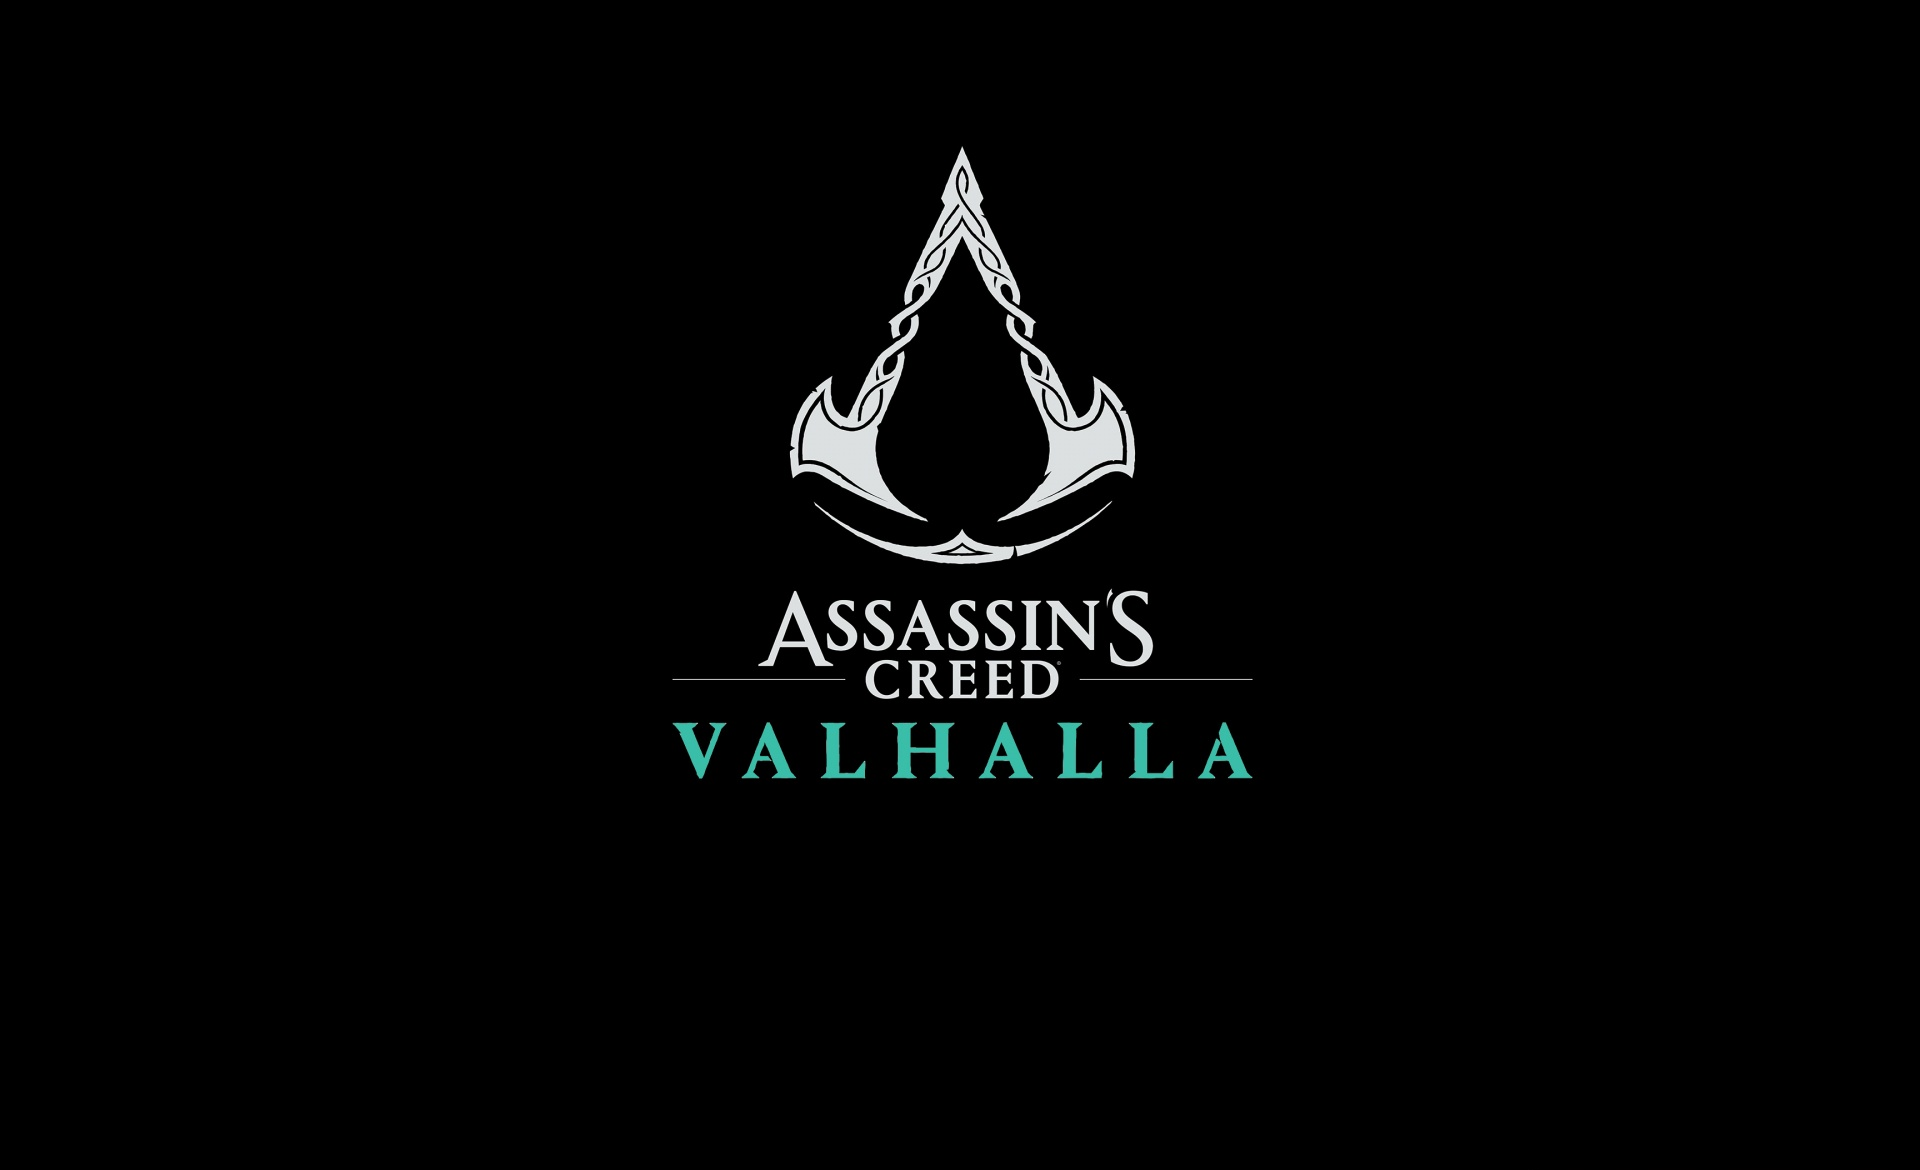 Assassin’s Creed Valhalla за первую неделю продала больше единиц, чем любая другая игра Assassin’s Creed ранее